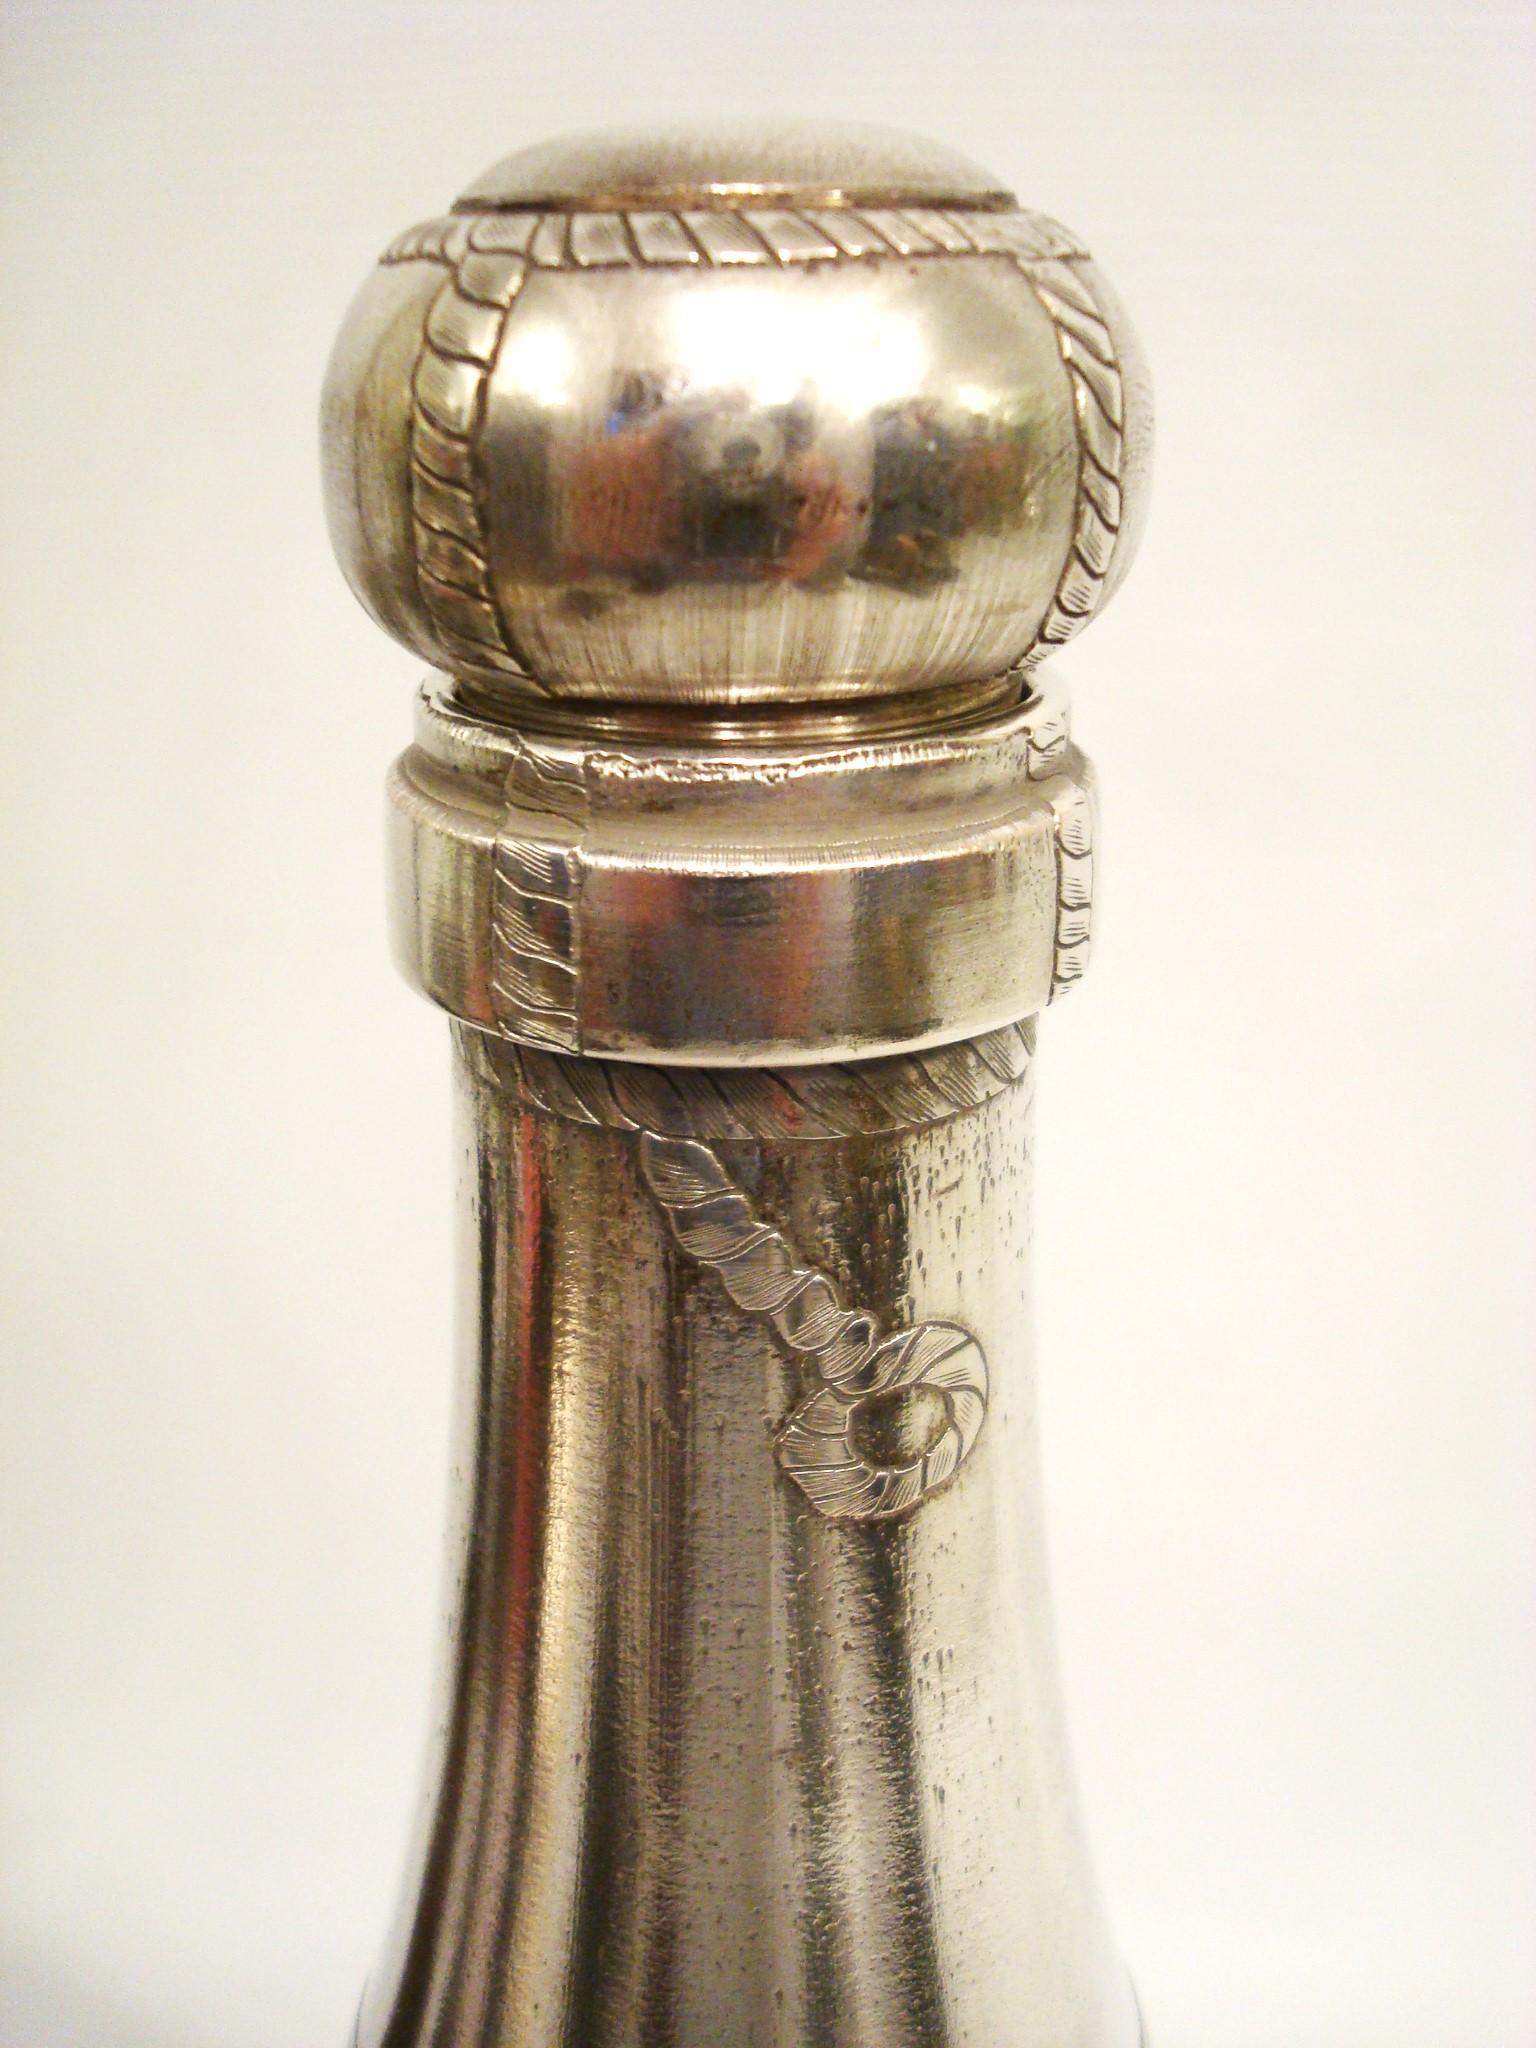 Art Déco Rare Bouteille de Champagne Argentée Shakers. France années 1930.

Un rare shaker à cocktail en métal argenté pour bouteille de champagne, avec étiquette gravée, feuille d'aluminium et fil de liège. Le Shakers se sépare juste en dessous de